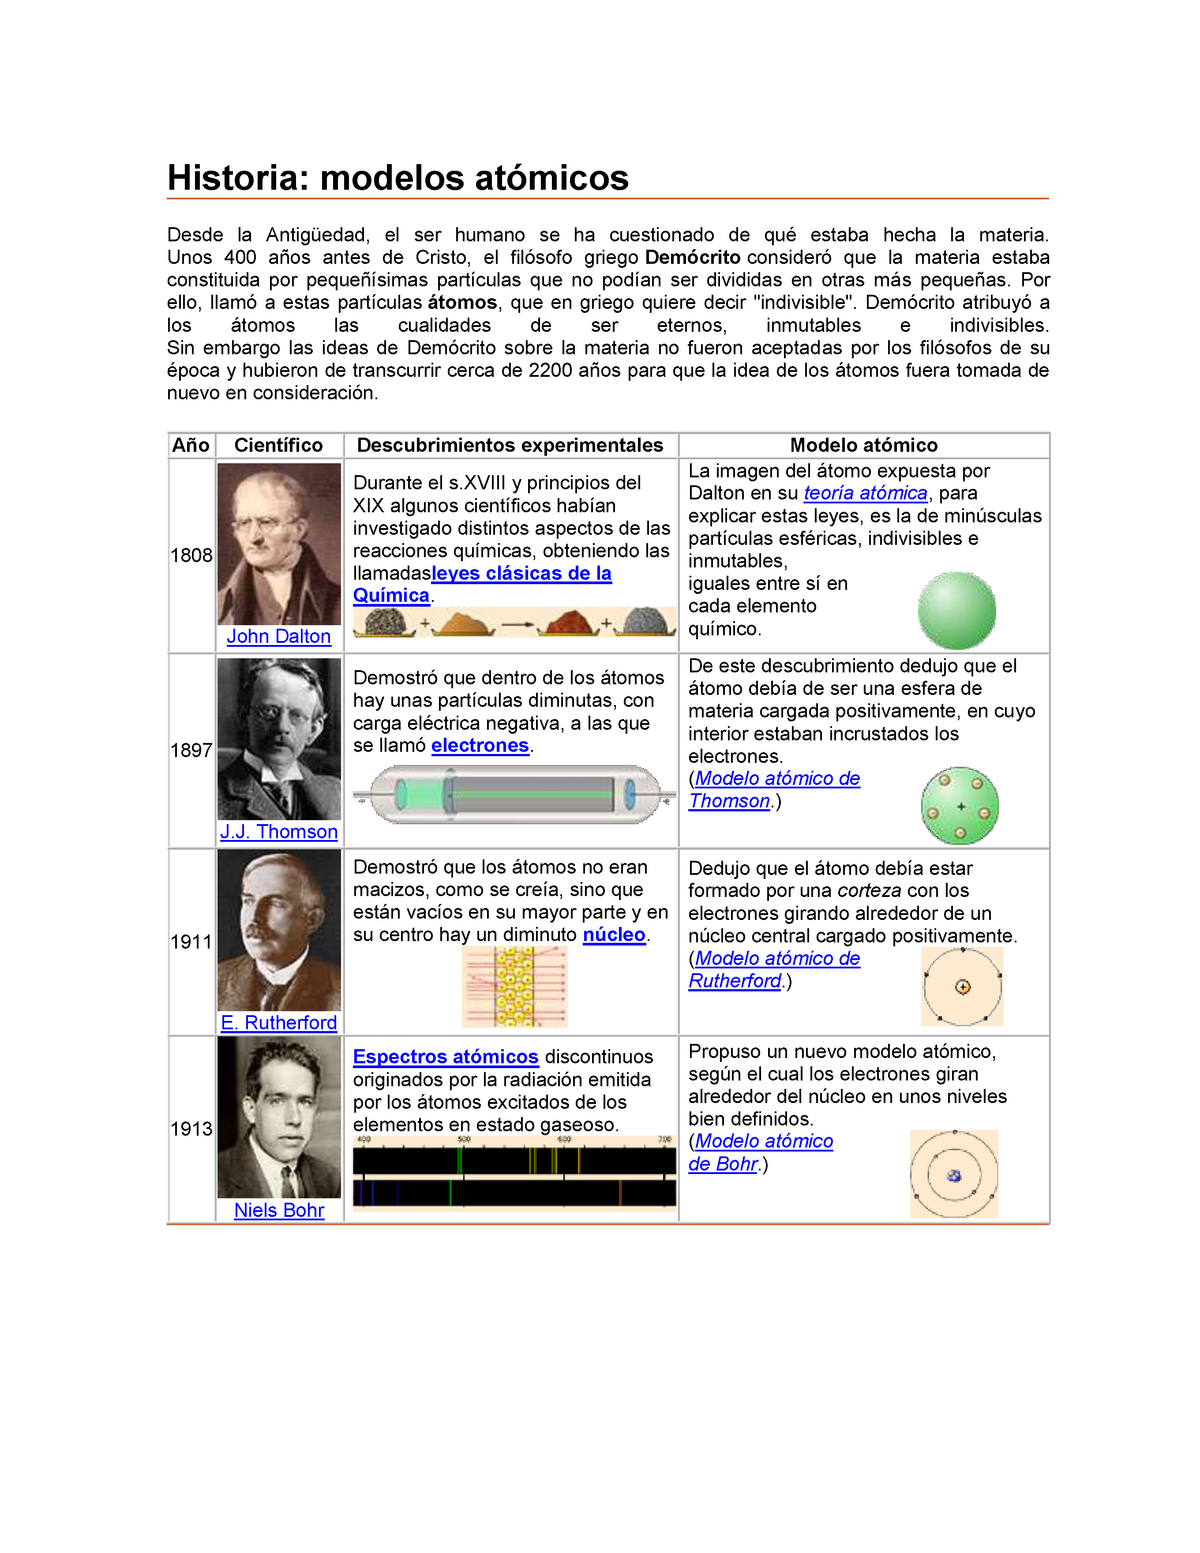 Cuadros Comparativos De Los Modelos Atomicos Modelos Atomicos | My XXX ...